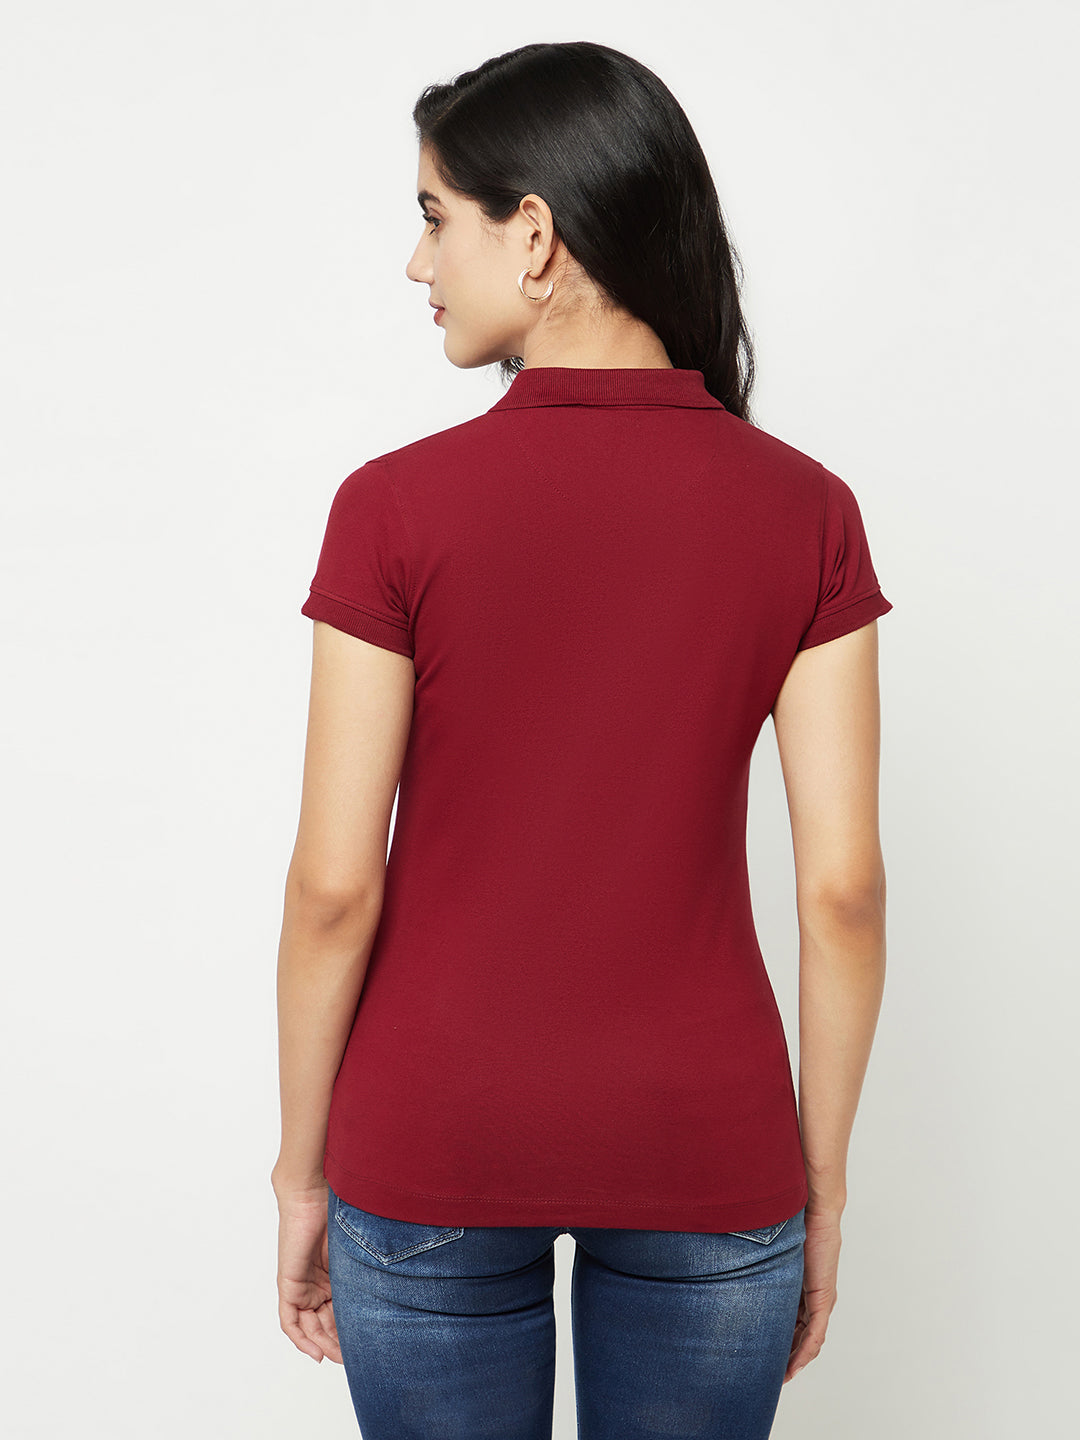 Maroon Cotton T-Shirt-Women T-shirts-Crimsoune Club